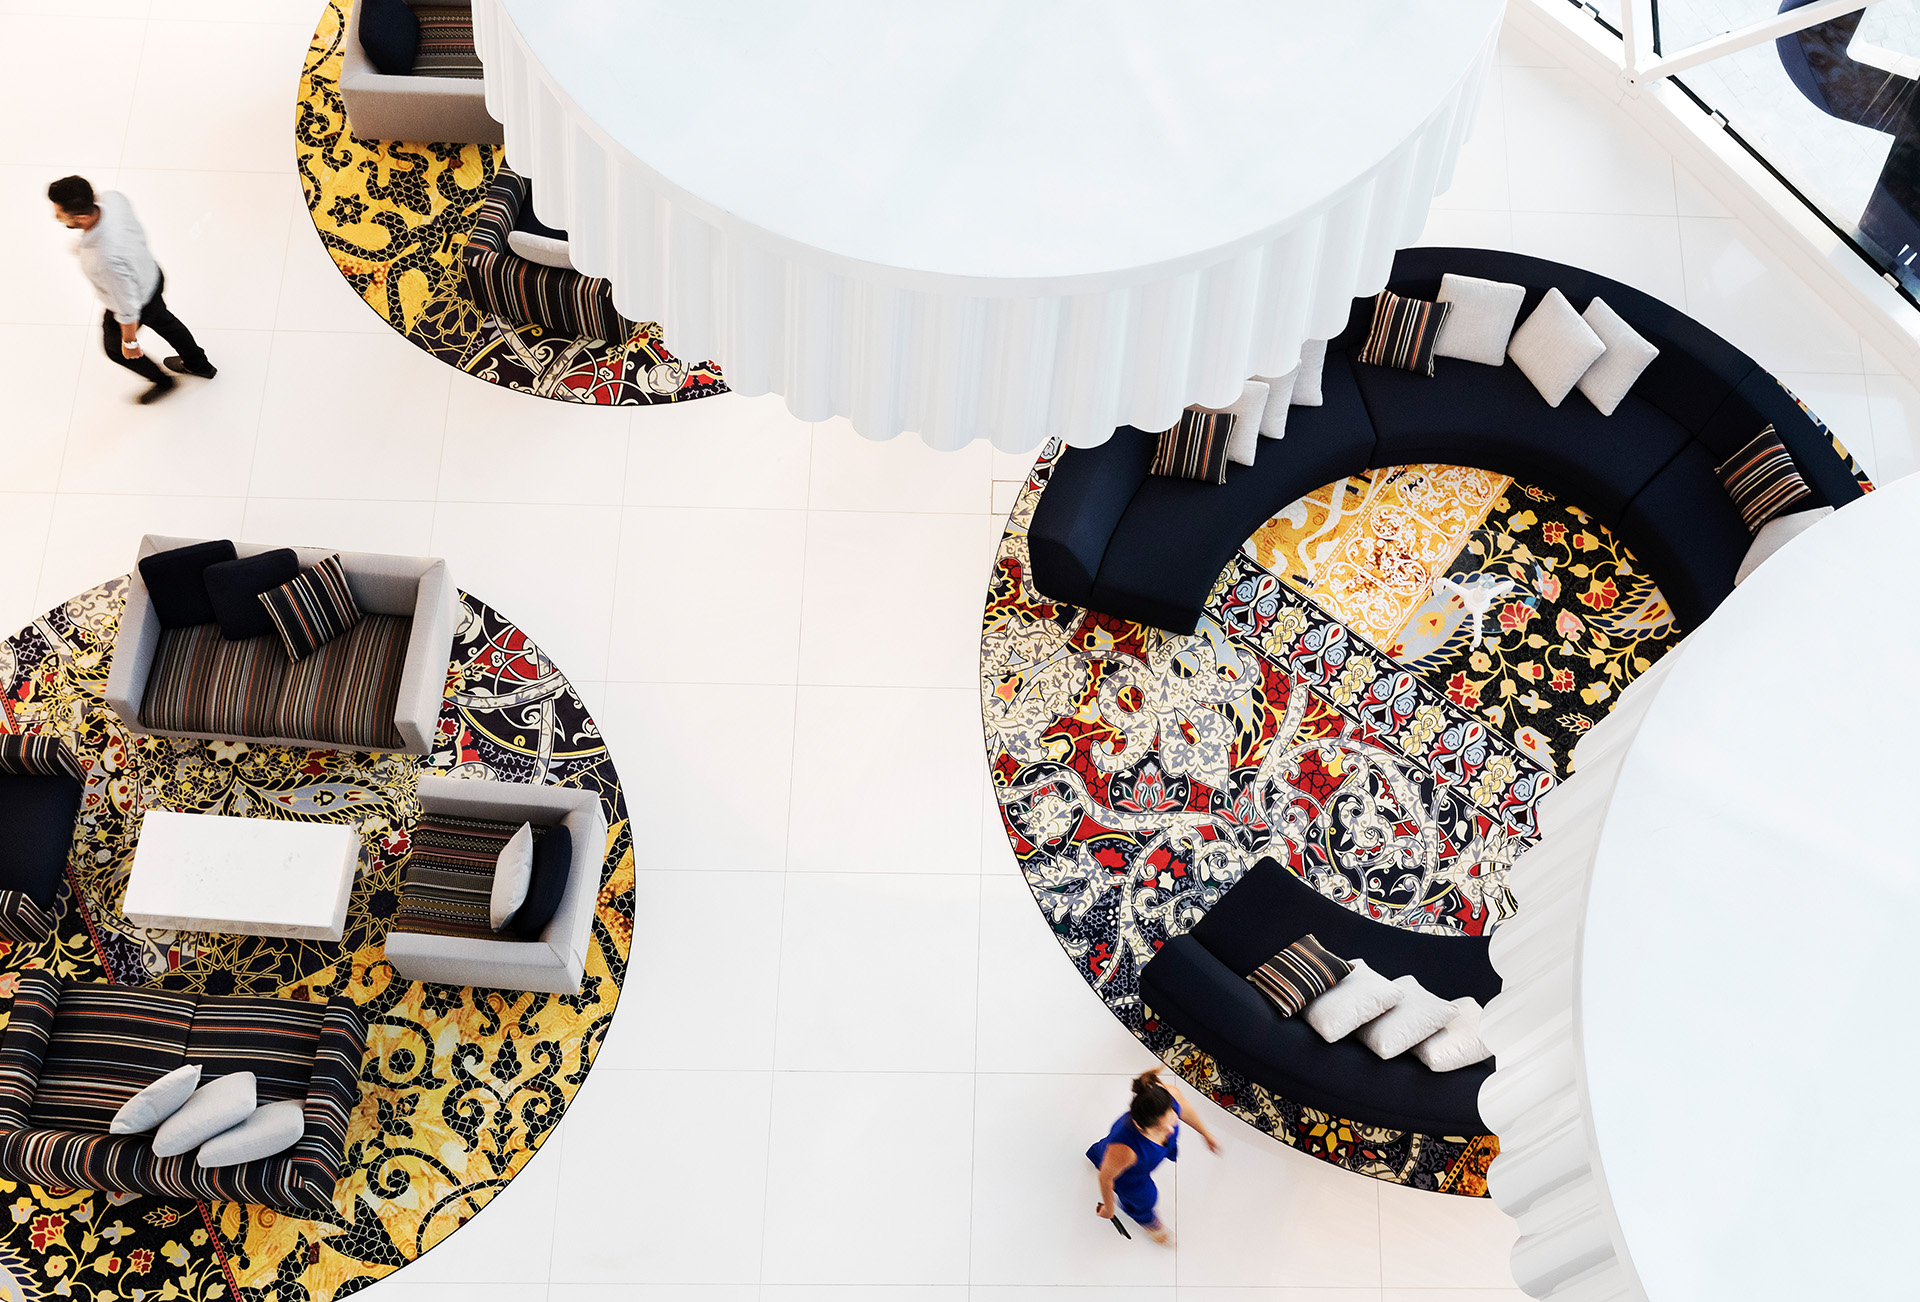  Widok z lotu ptaka na hotelowe lobby z okrągłymi, kolorowymi wyspami do siedzenia.